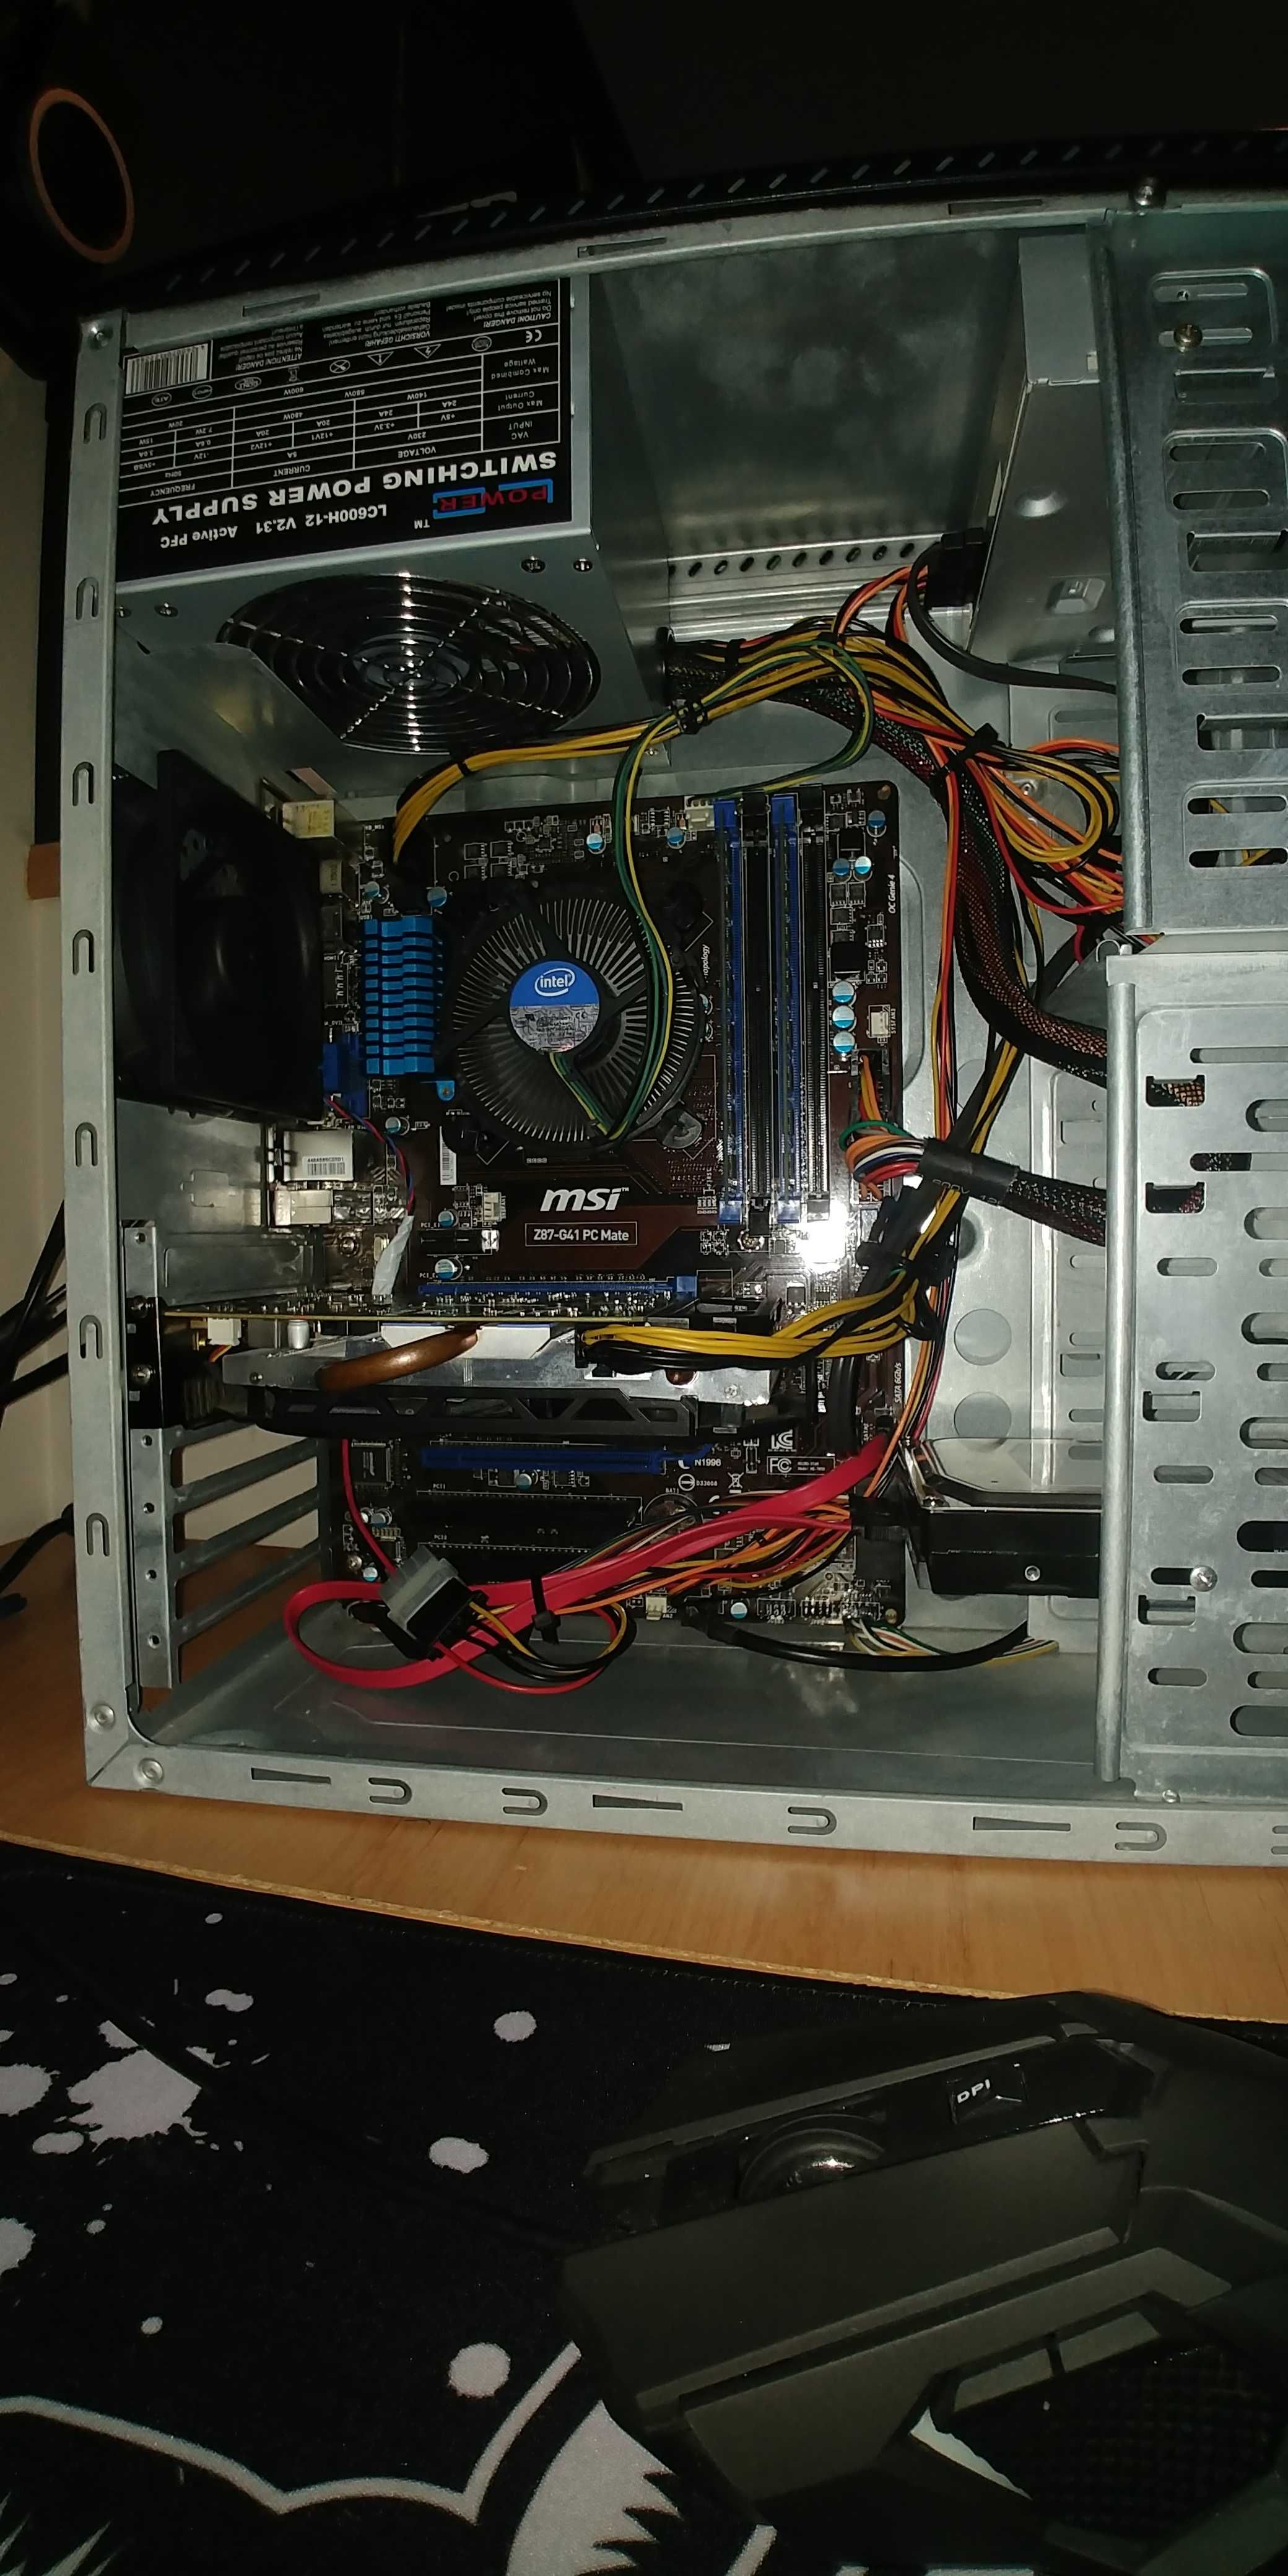 Komputer PC - Do gier i nie tylko: i5-4440, 8GB RAM, GTX 750 Ti